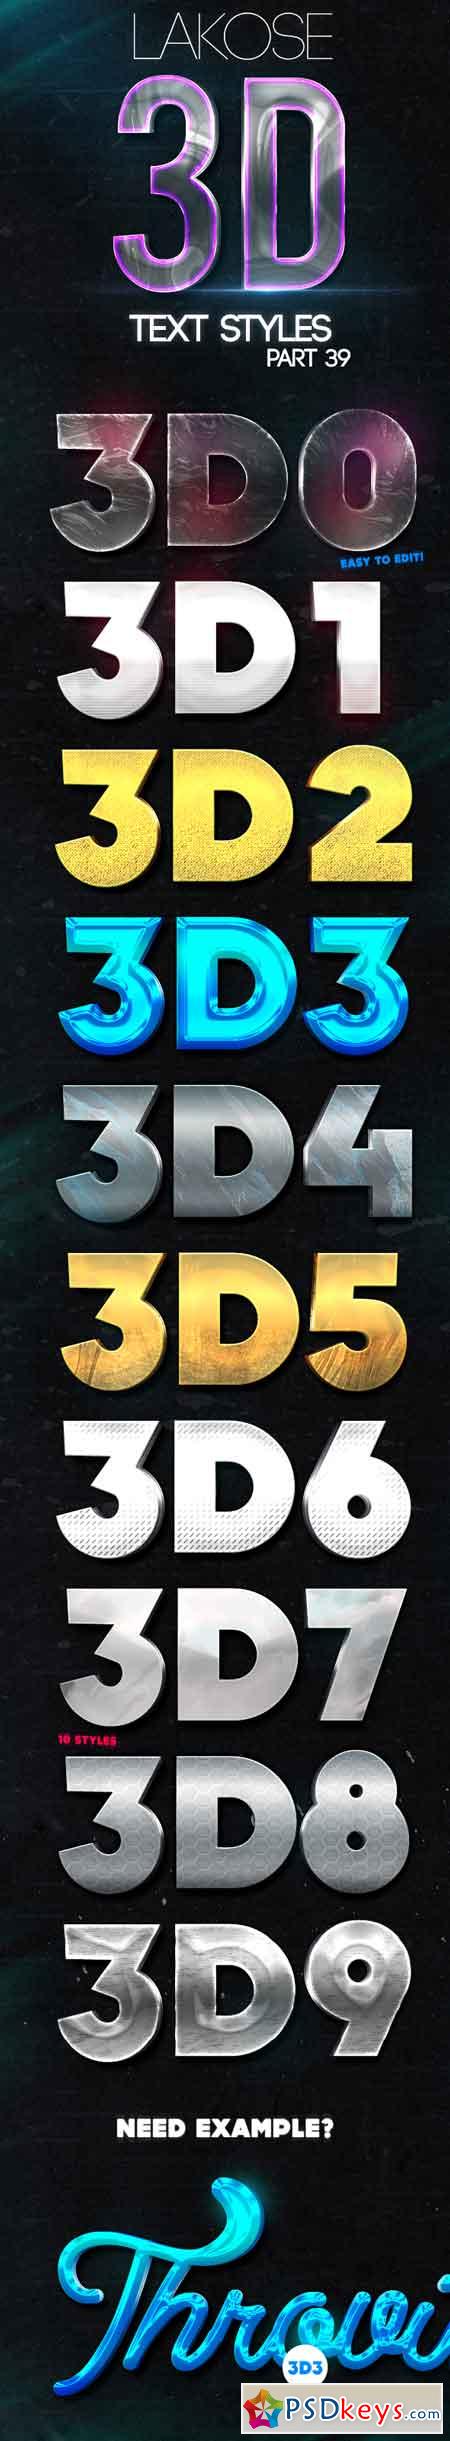 Lakose 3D Text Styles Part 39 22644984